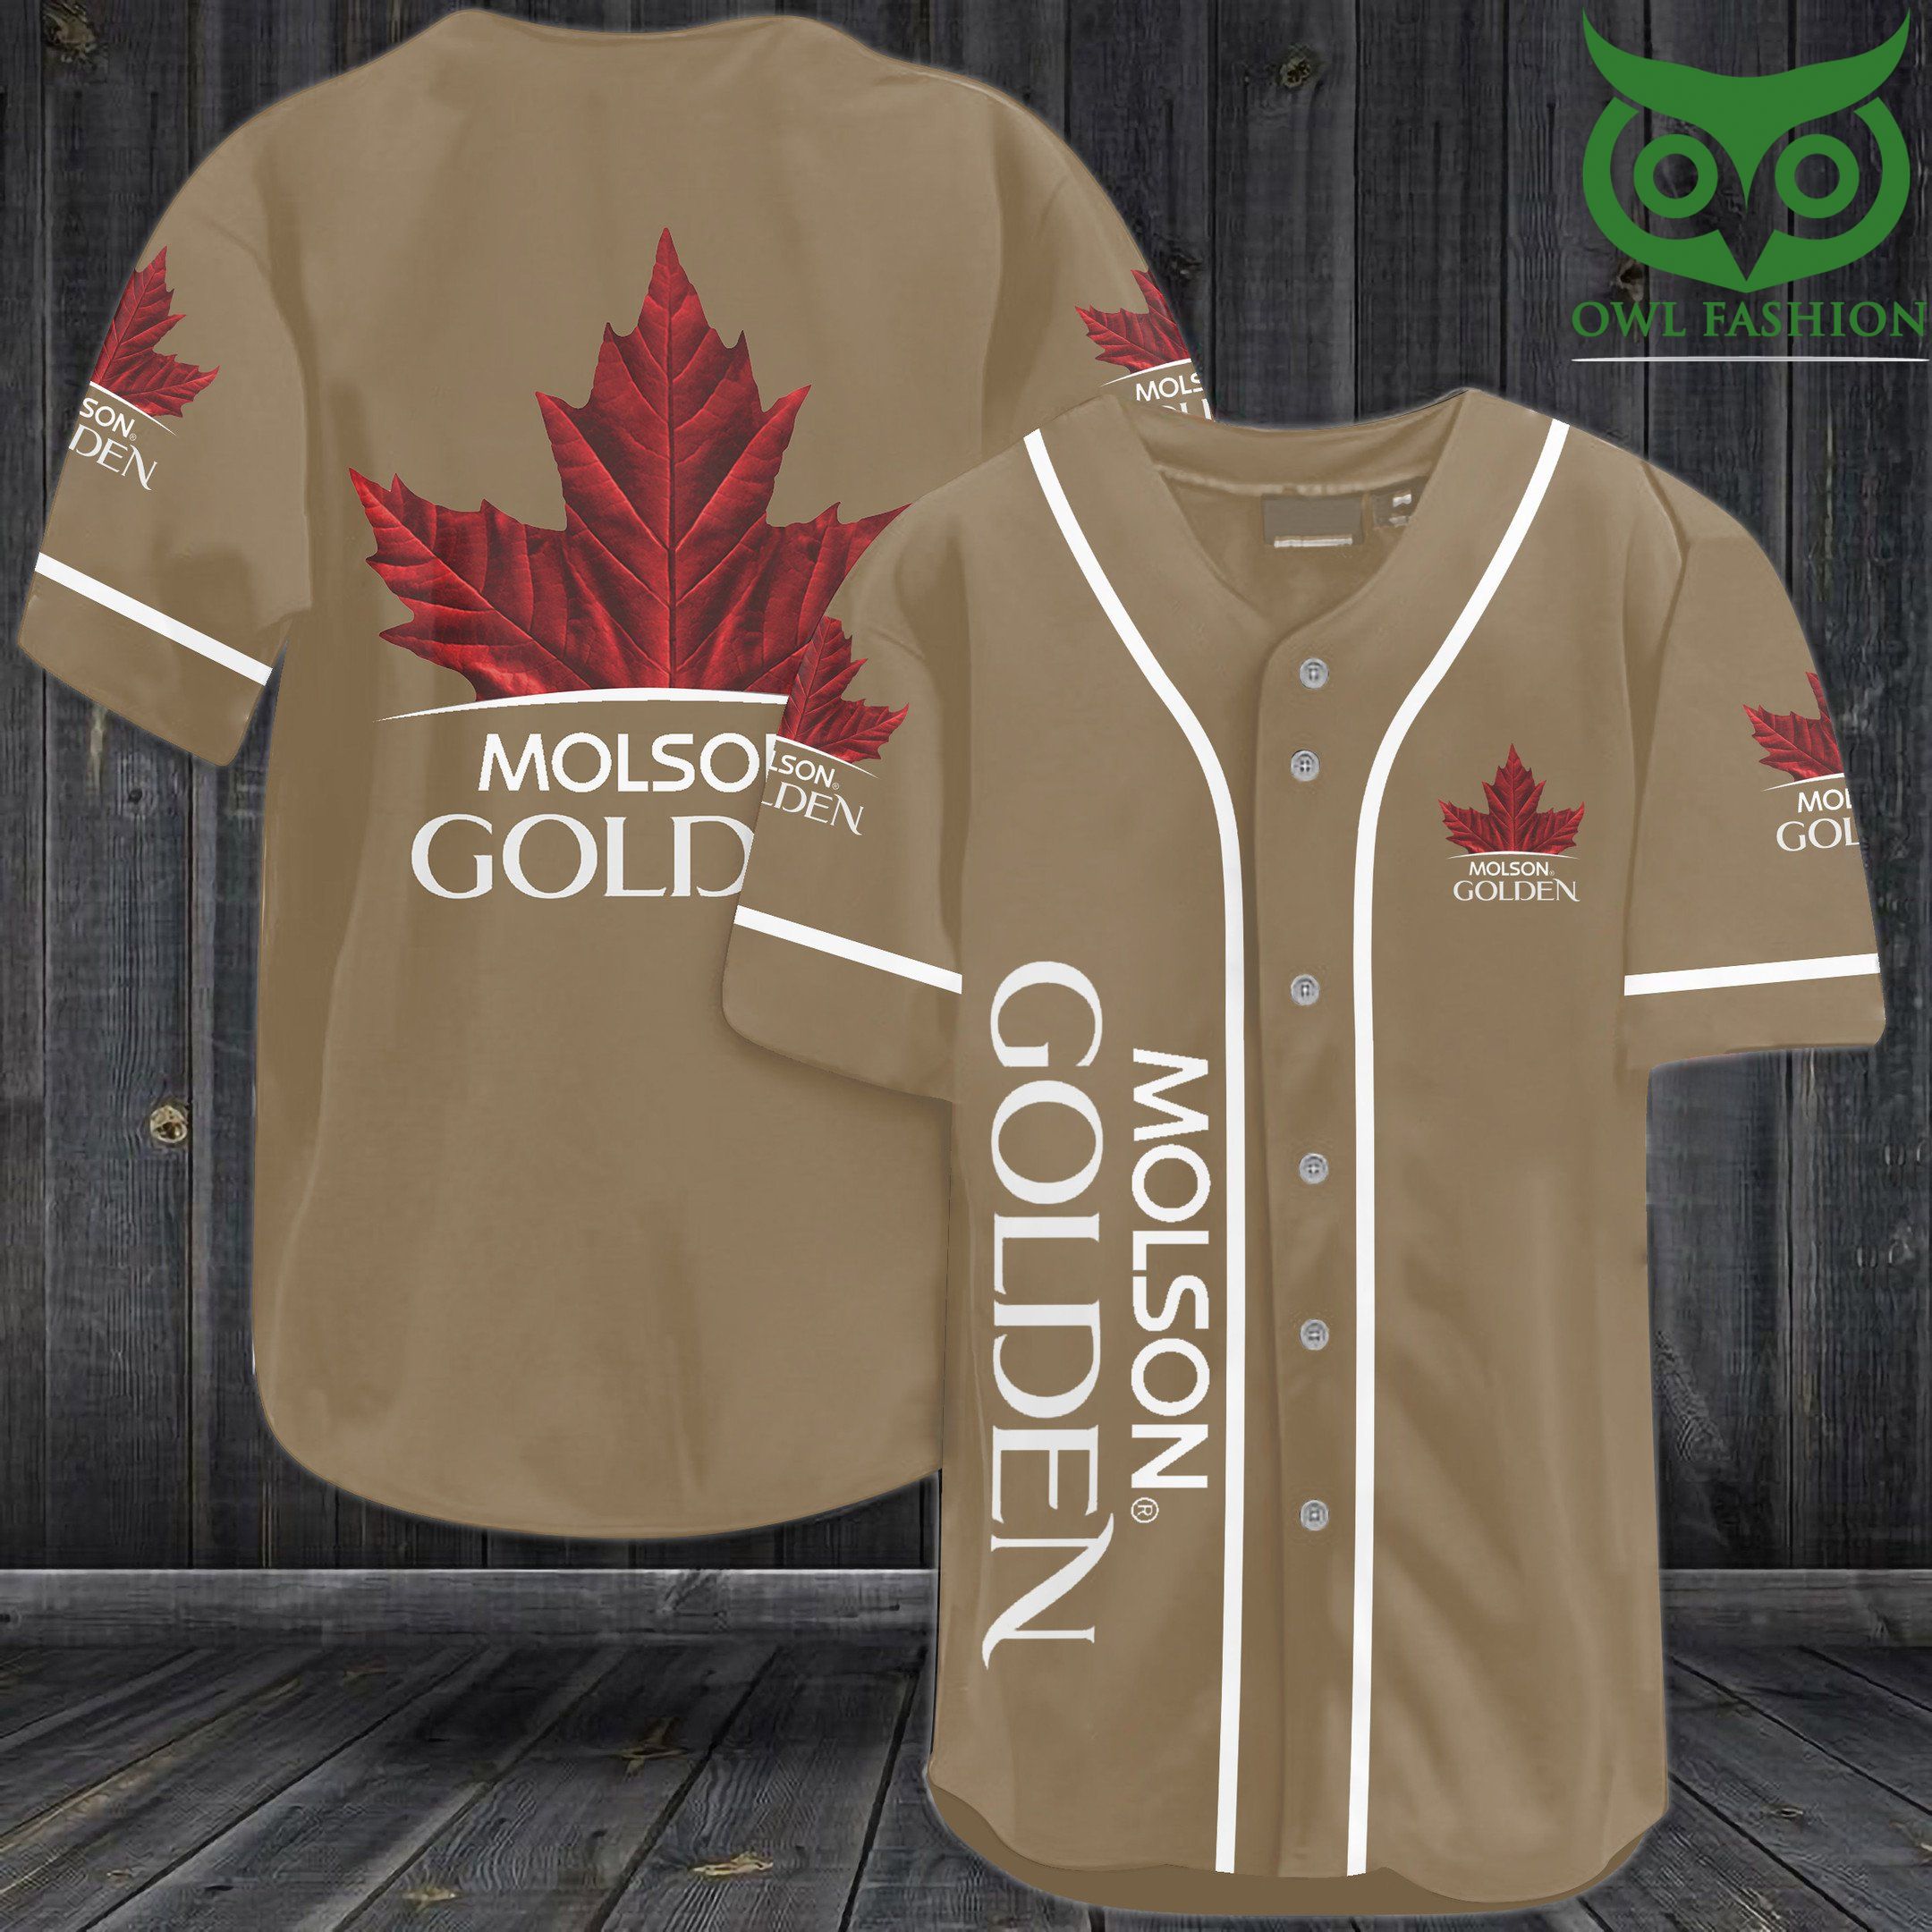 Molson Golden Baseball Jersey Shirt